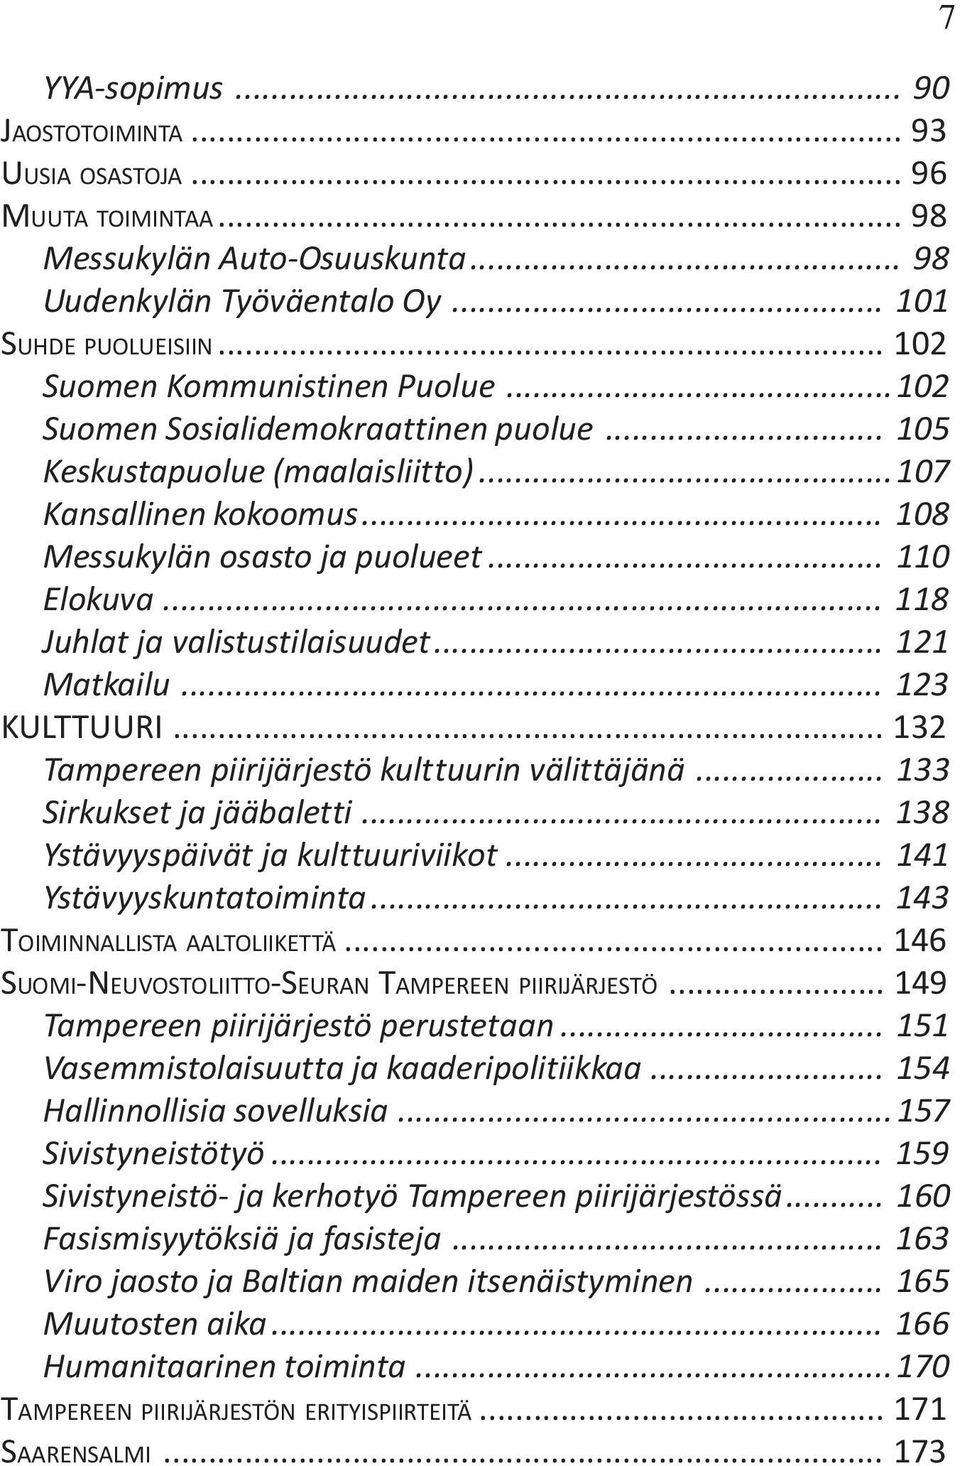 .. 121 Matkailu... 123 KULTTUURI... 132 Tampereen piirijärjestö kulttuurin välittäjänä... 133 Sirkukset ja jääbaletti... 138 Ystävyyspäivät ja kulttuuriviikot... 141 Ystävyyskuntatoiminta.